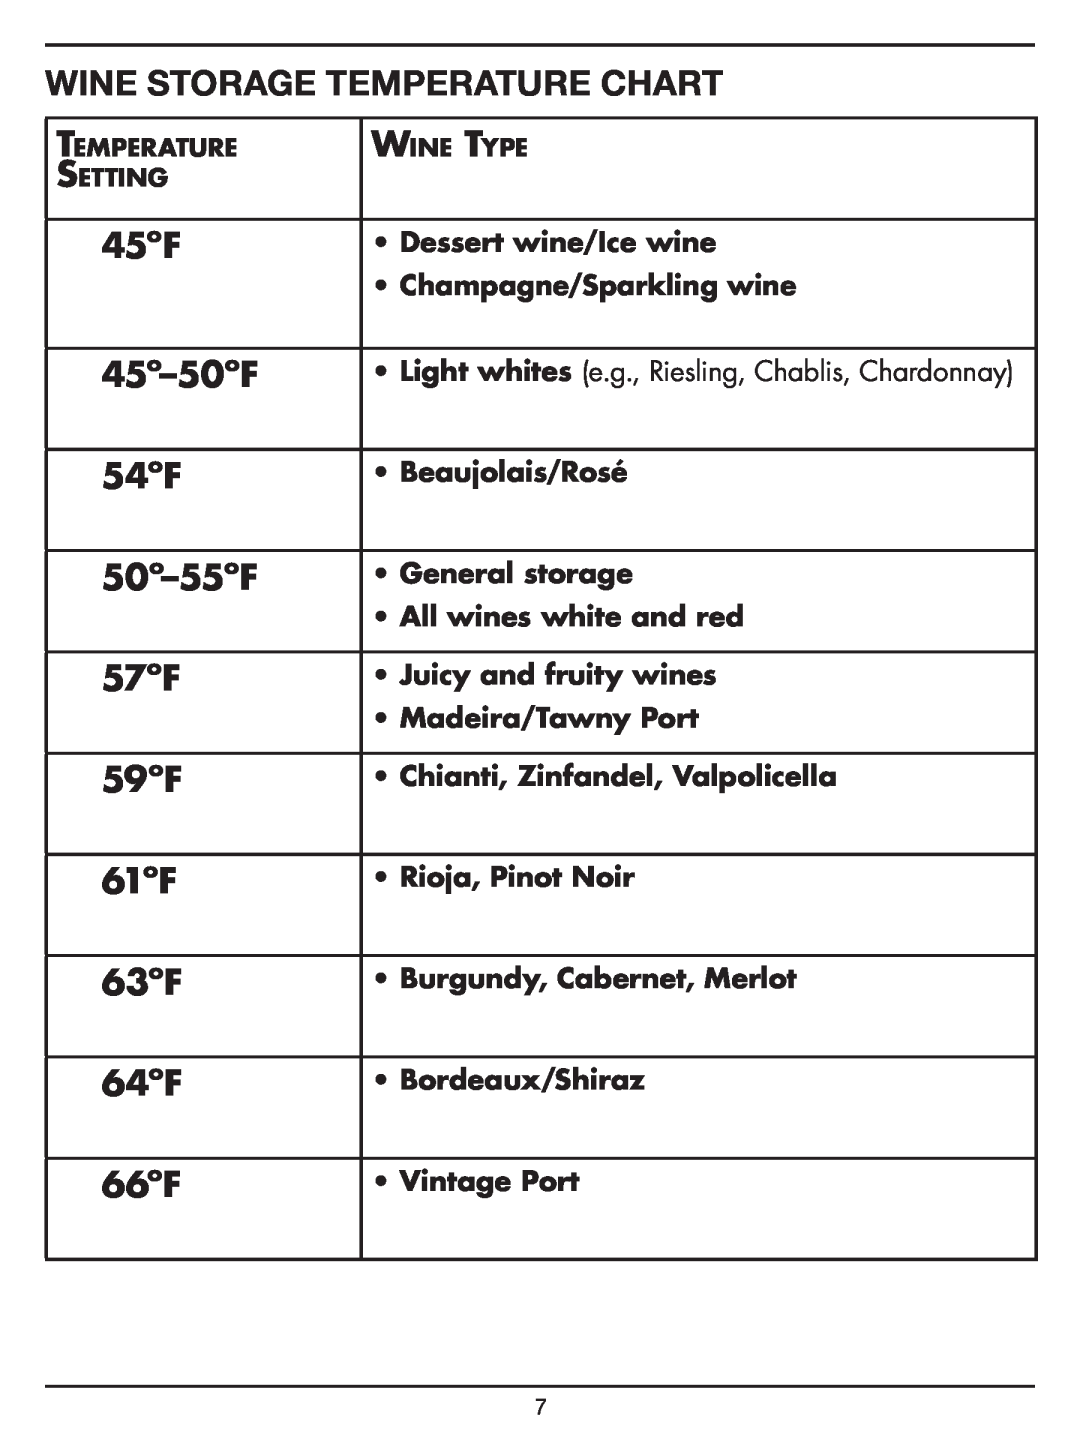 Cuisinart Dual Zone Private Reserve Wine Cellar Wine Storage Temperature Chart, 45ºF, 45º-50ºF, 54ºF, 50º-55ºF, 57ºF, 59ºF 